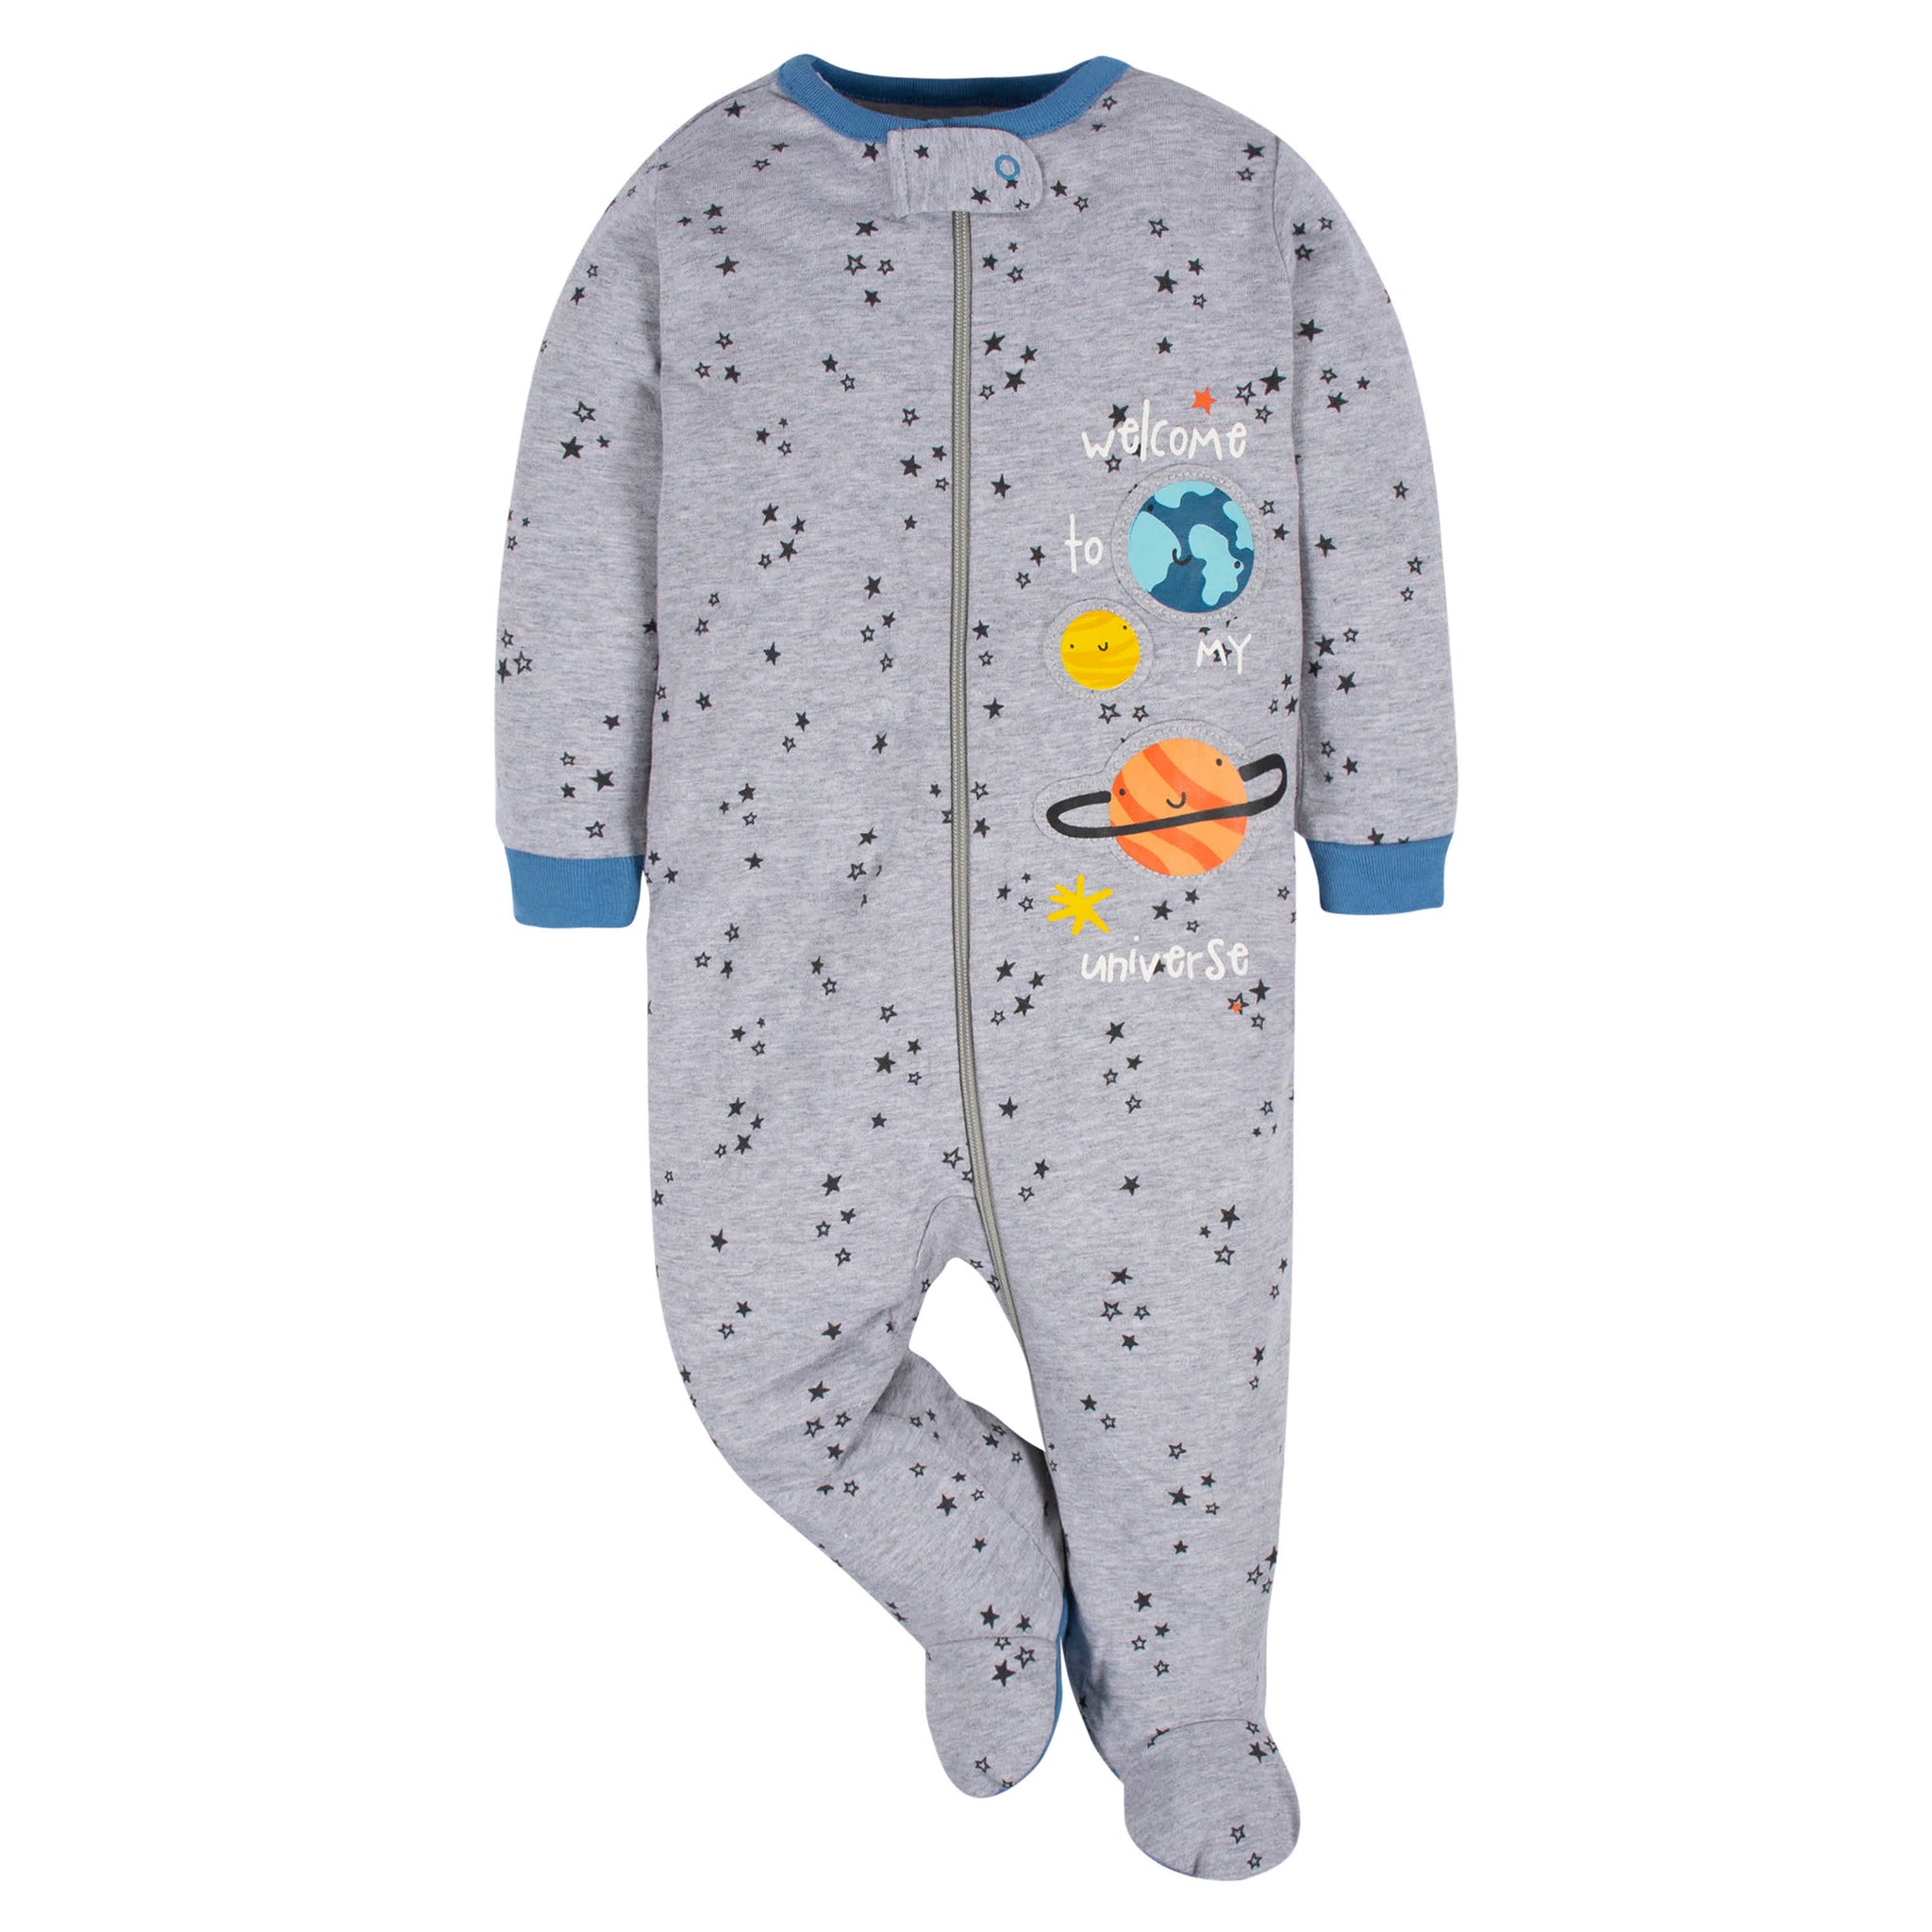 4-Pack Baby Boys Space Explorer Sleep 'N Plays-Gerber Childrenswear Wholesale